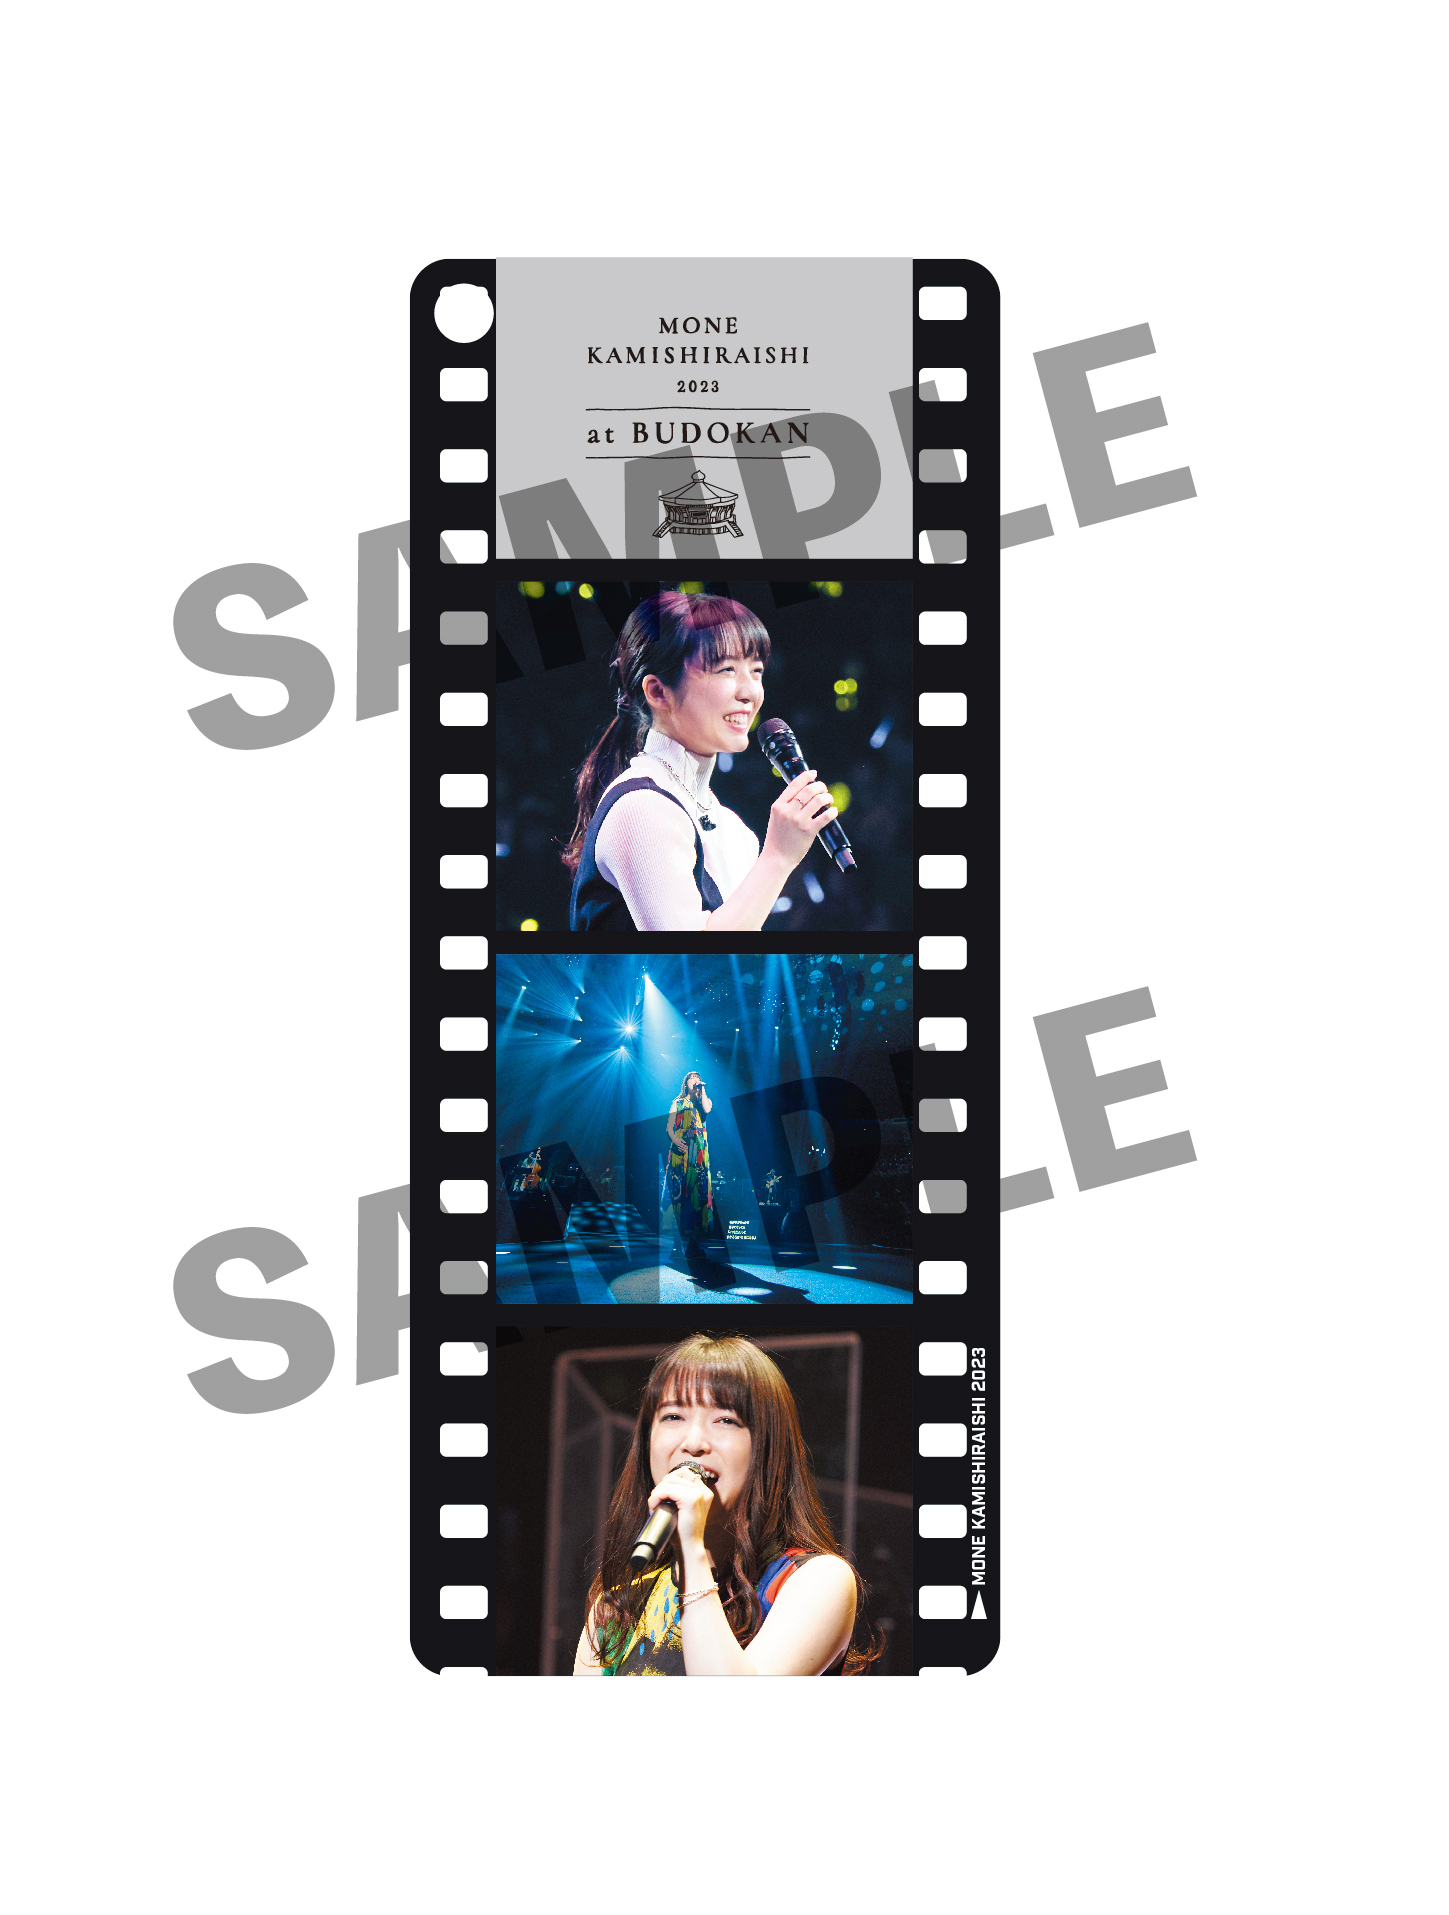 Live Blu-ray&DVD「Mone Kamishiraishi 2023 at BUDOKAN」発売決定 